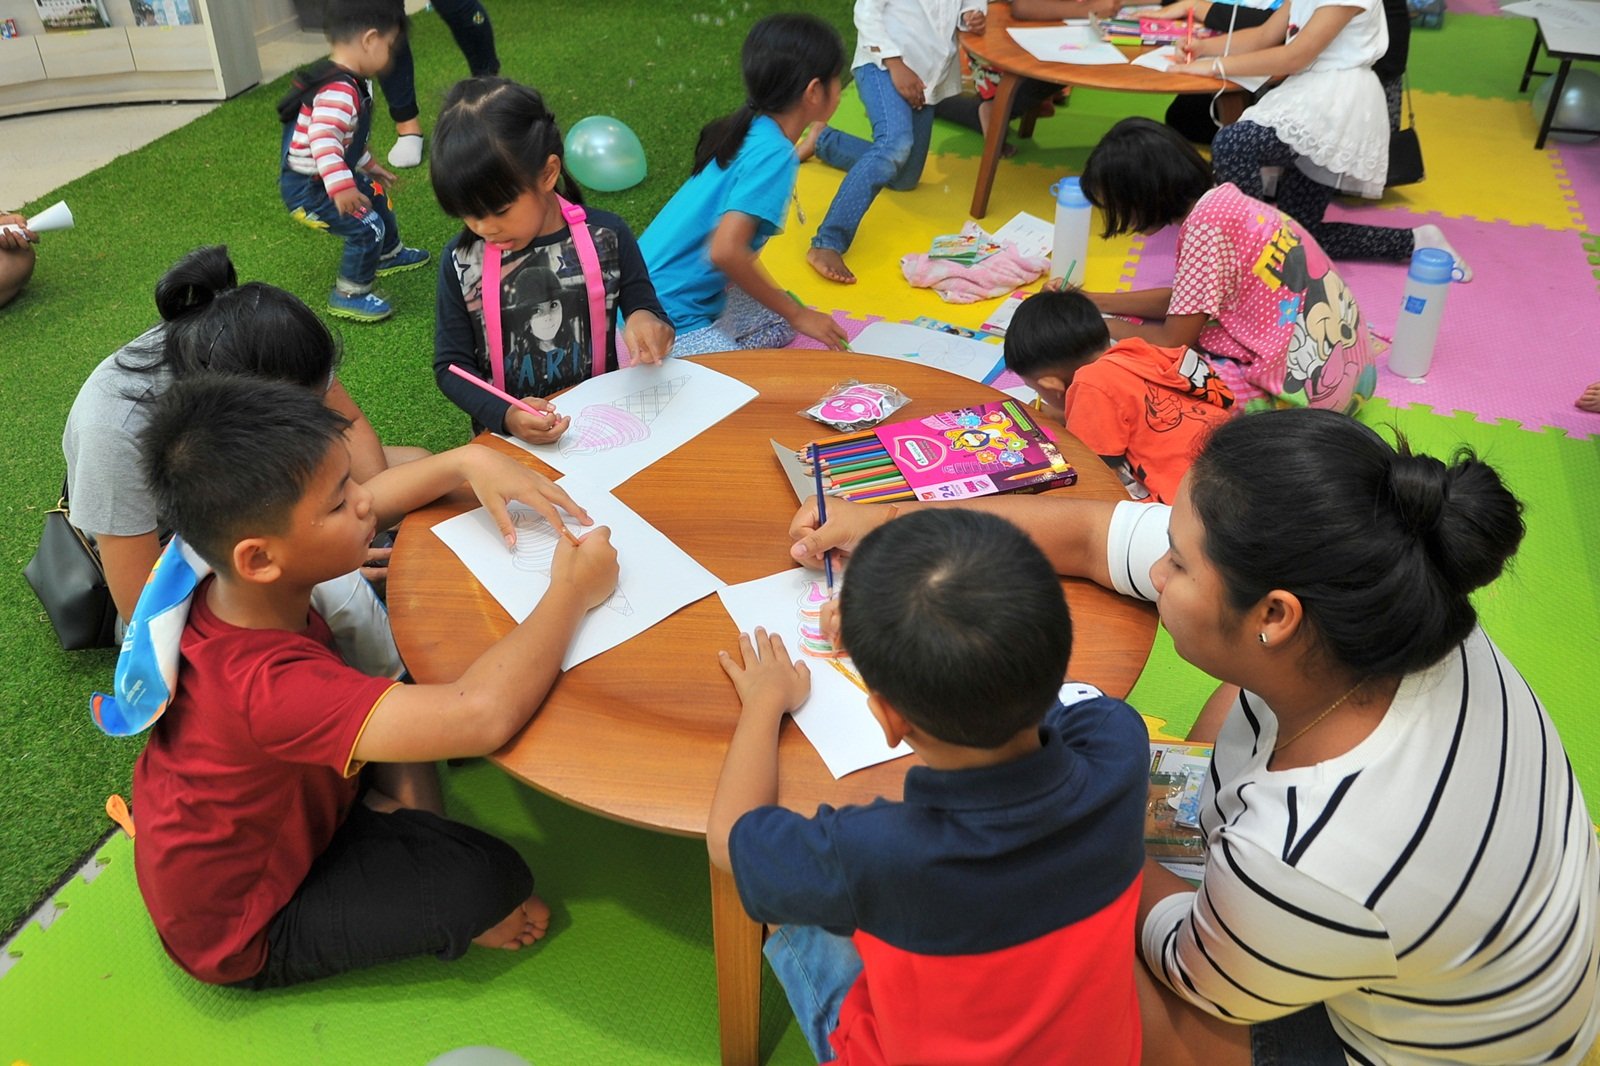 สสส. ชวนร่วมงาน“วันเด็ก”ที่ศูนย์เรียนรู้สุขภาวะ thaihealth